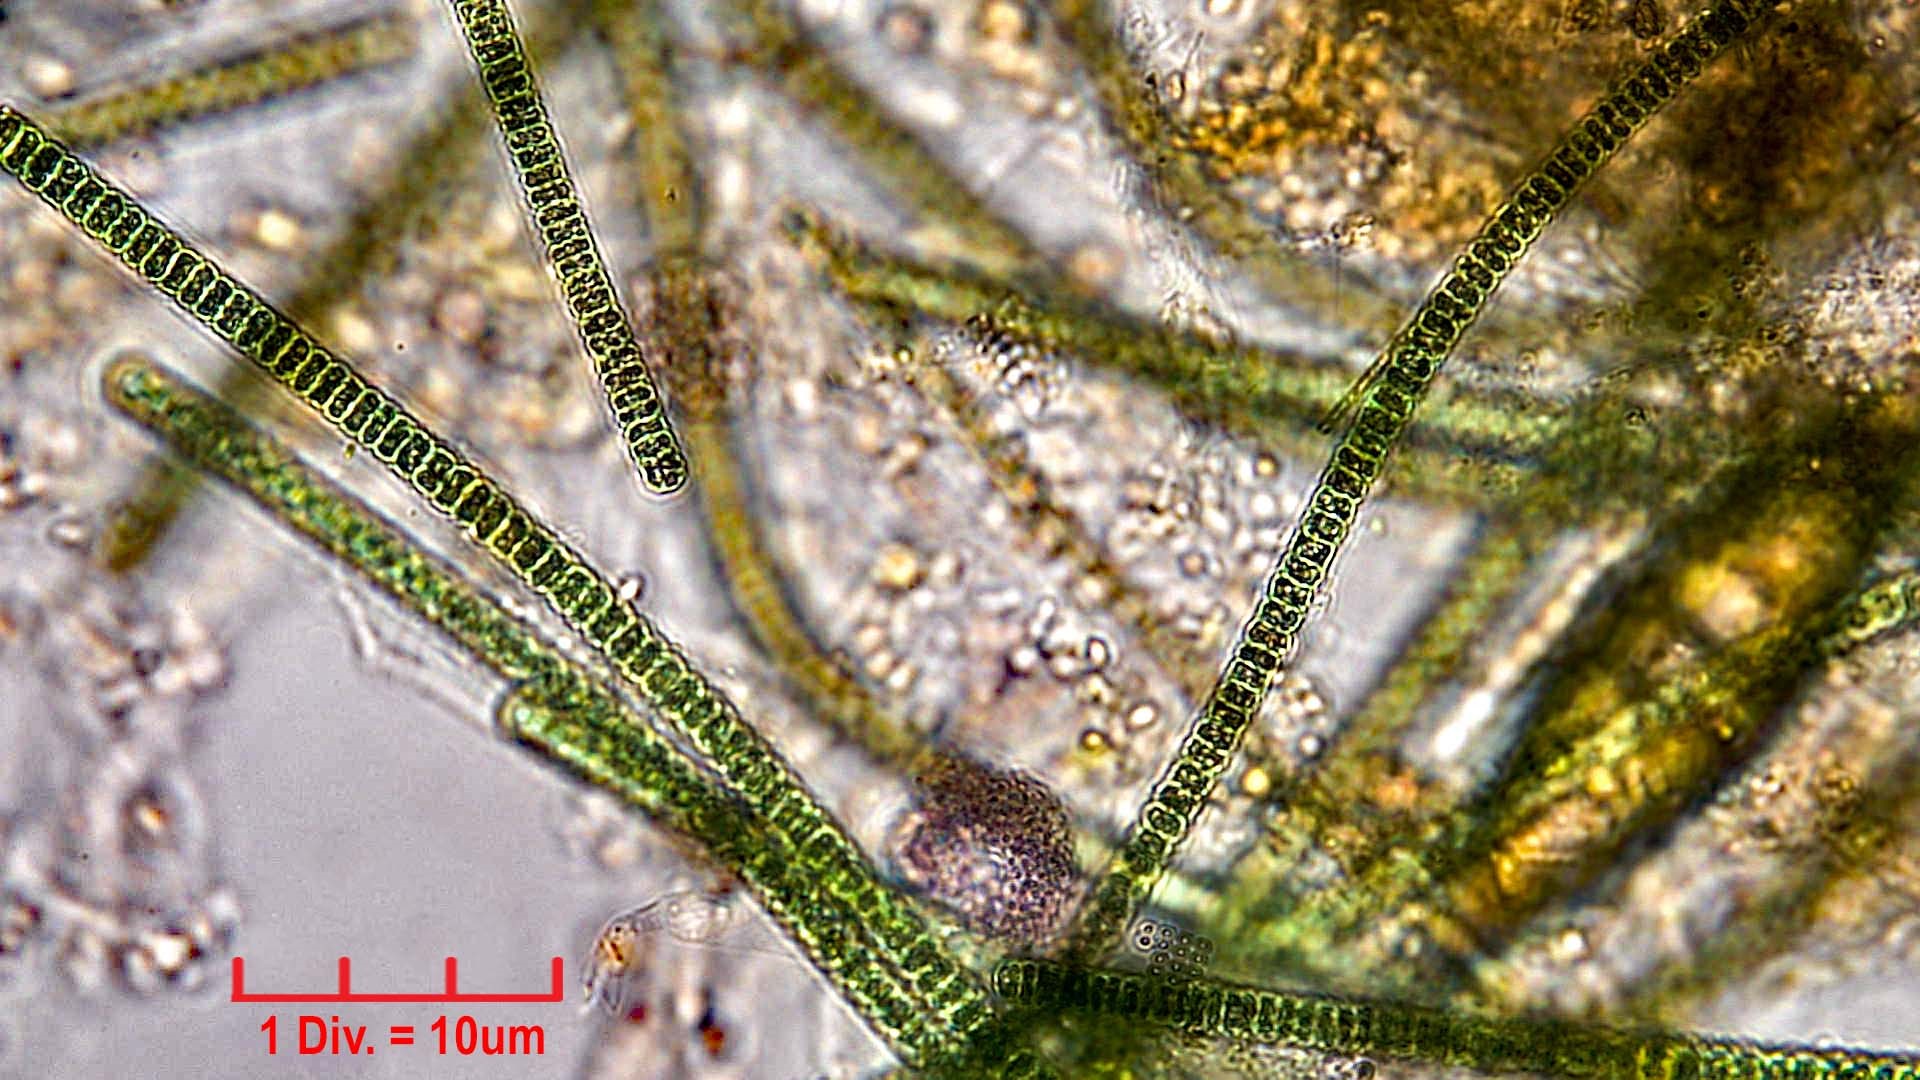 Cyanobacteria/Oscillatoriales/Oscillatoriaceae/Oscillatoria/articulata/oscillatoria-articulata-187.jpg